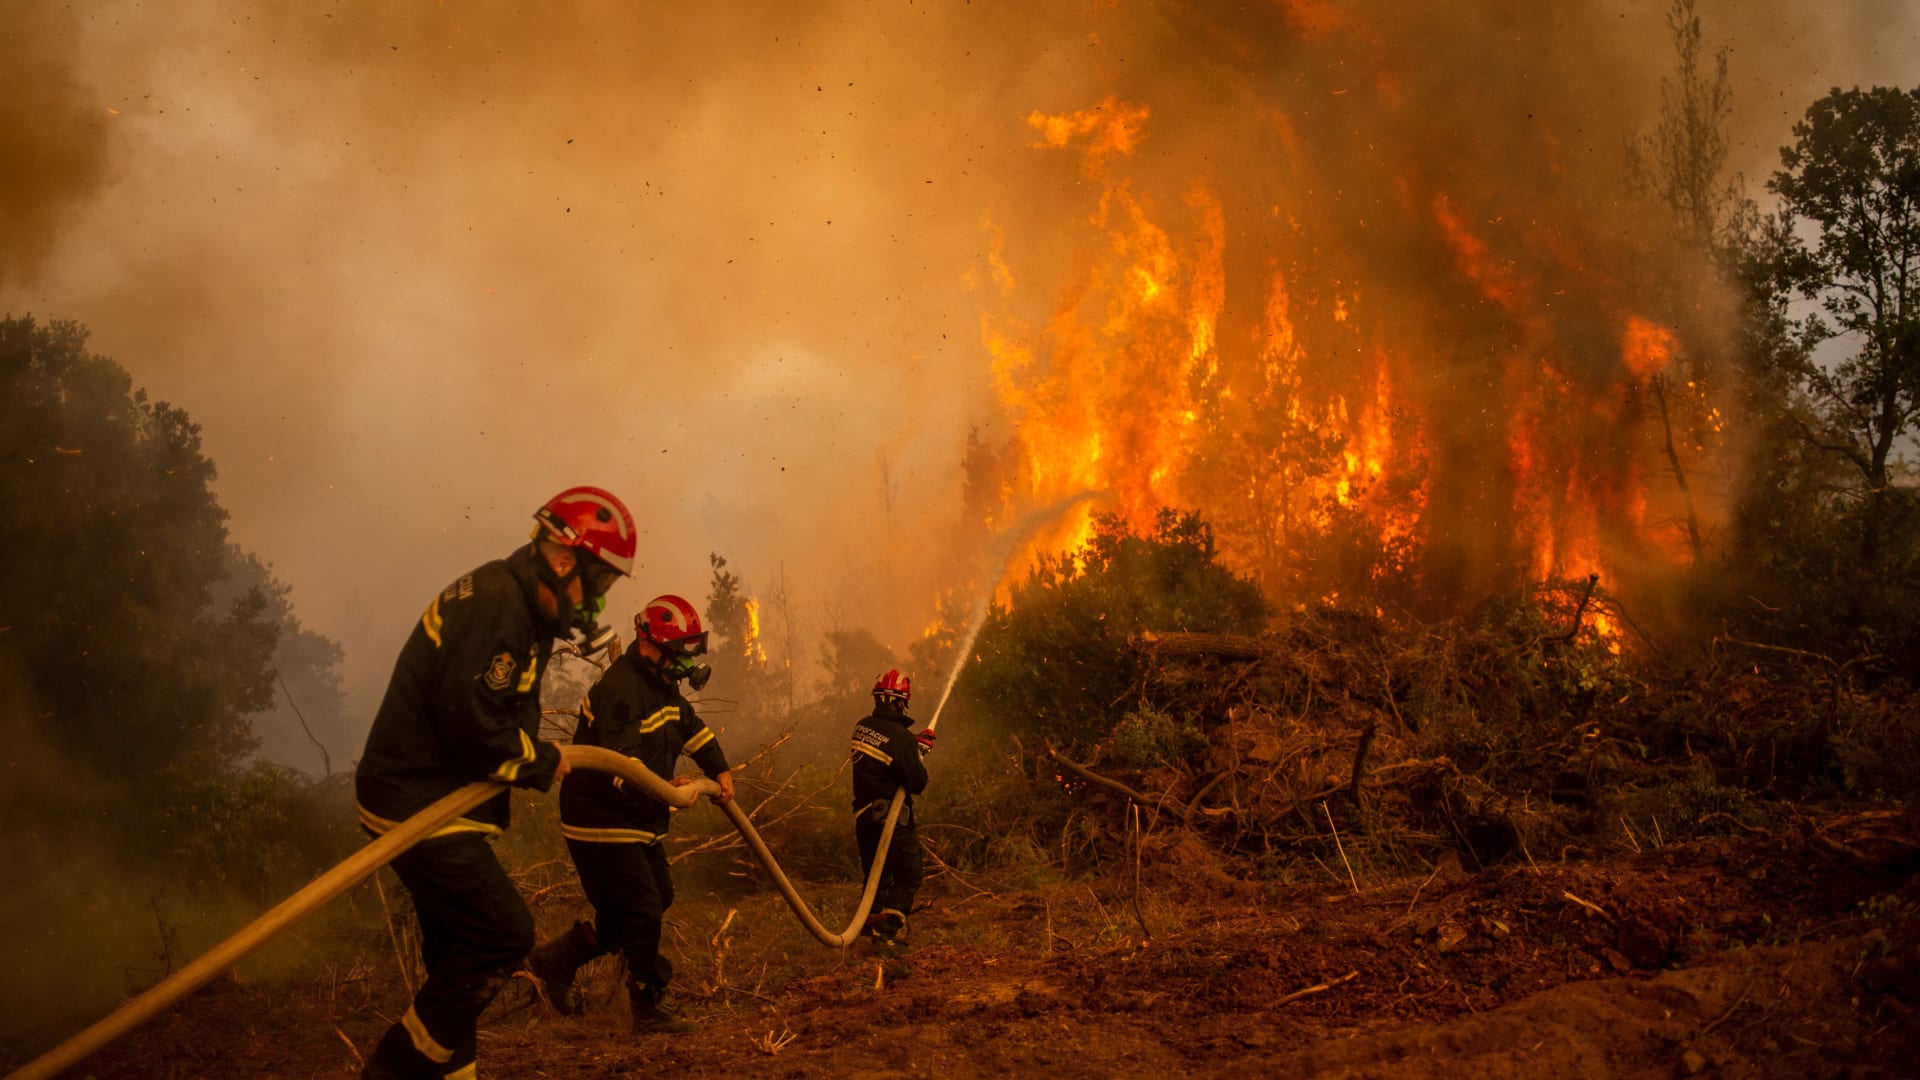 رجال الإطفاء في اليونان في حالة تأهب مع ارتفاع خطر الحرائق - بوابة الأهرام